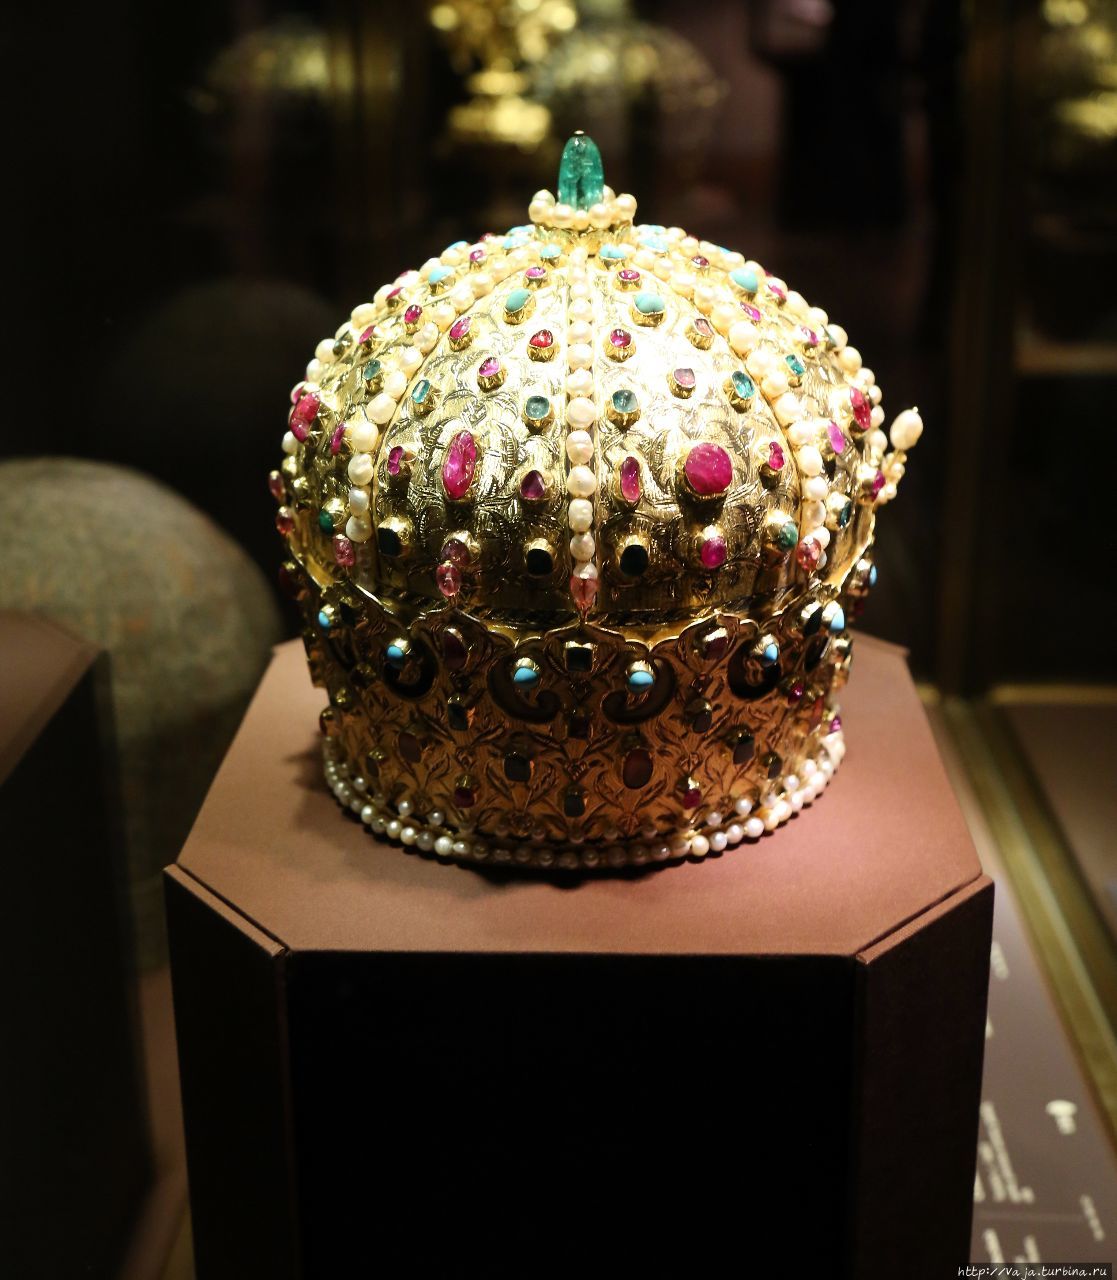 Роскошная корона Иштвана Бочкану,со множество алмазов и брилиантов,сделана по заказу султана в Персии Вена, Австрия